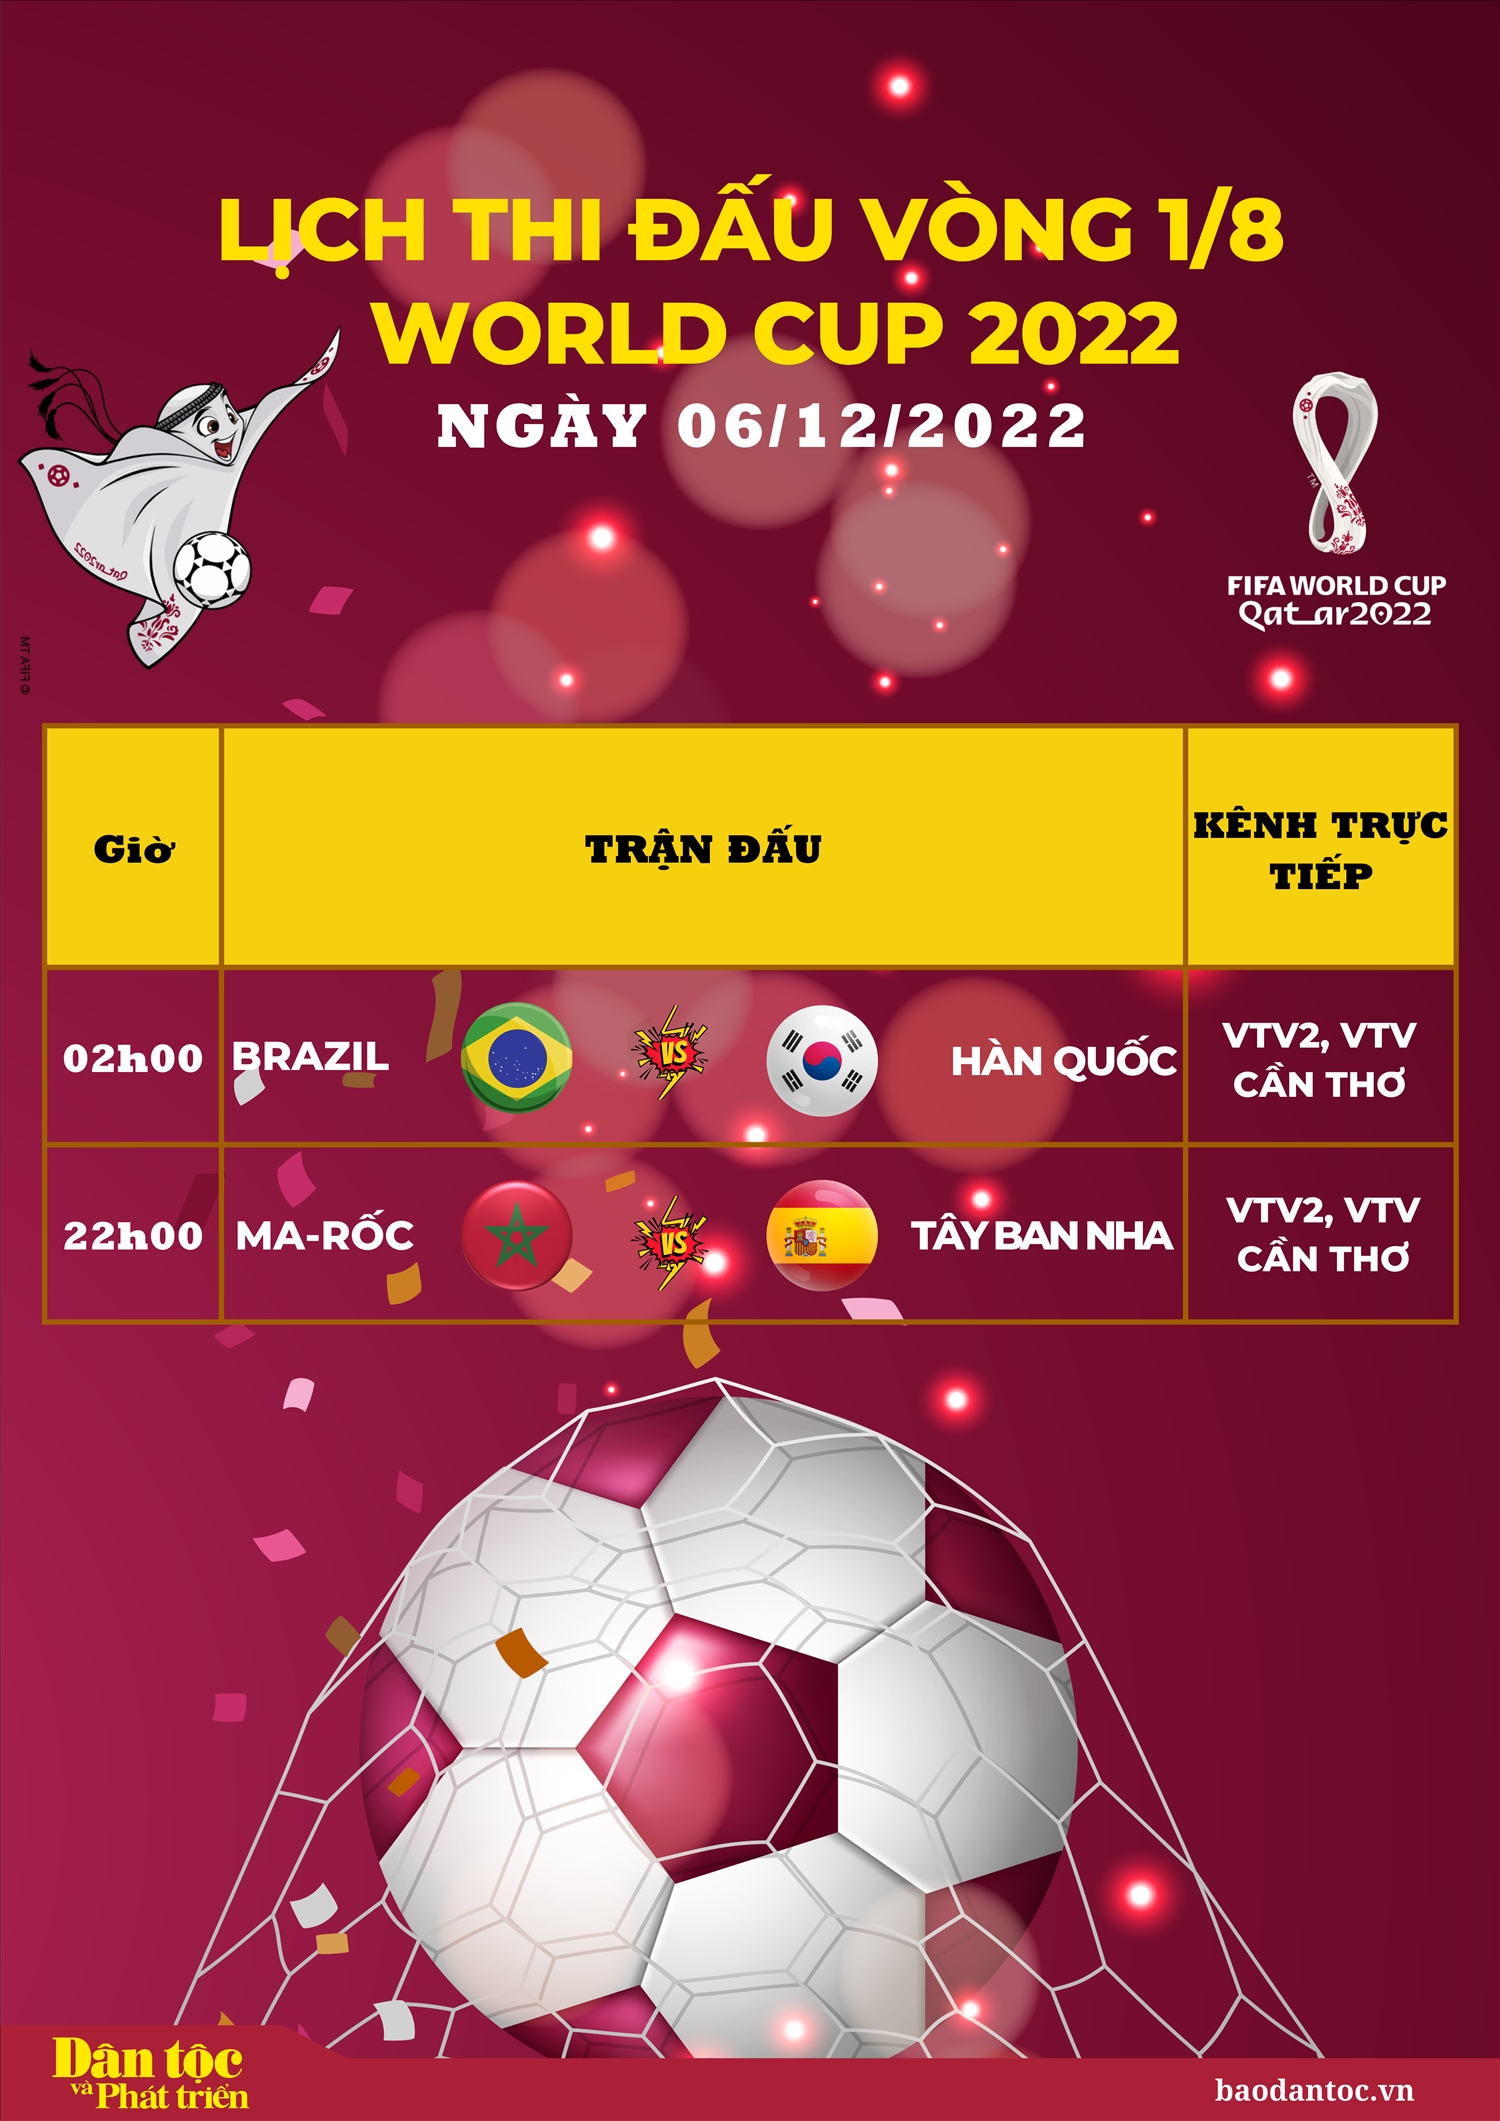 Lịch thi đấu vòng 1/8 World Cup 2022 ngày 6/12/2022